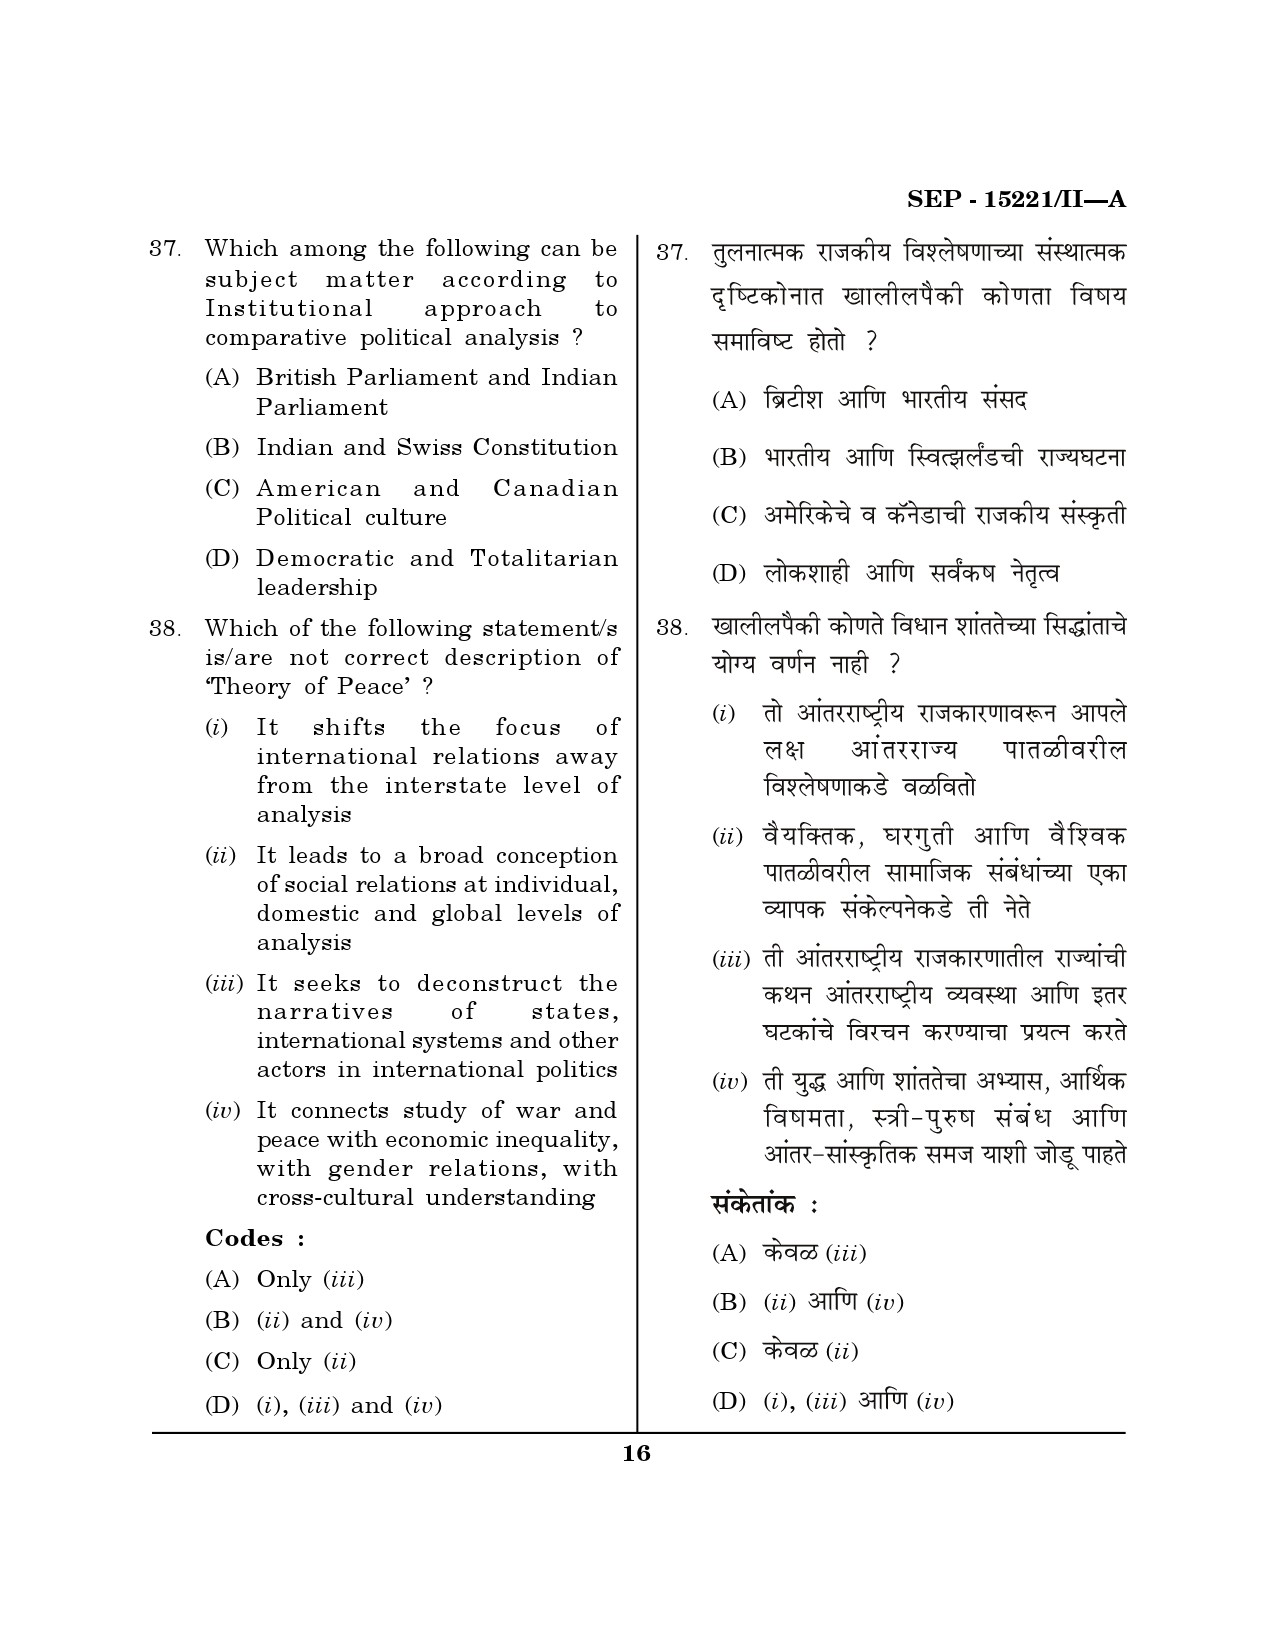 Maharashtra SET Political Science Exam Question Paper September 2021 15